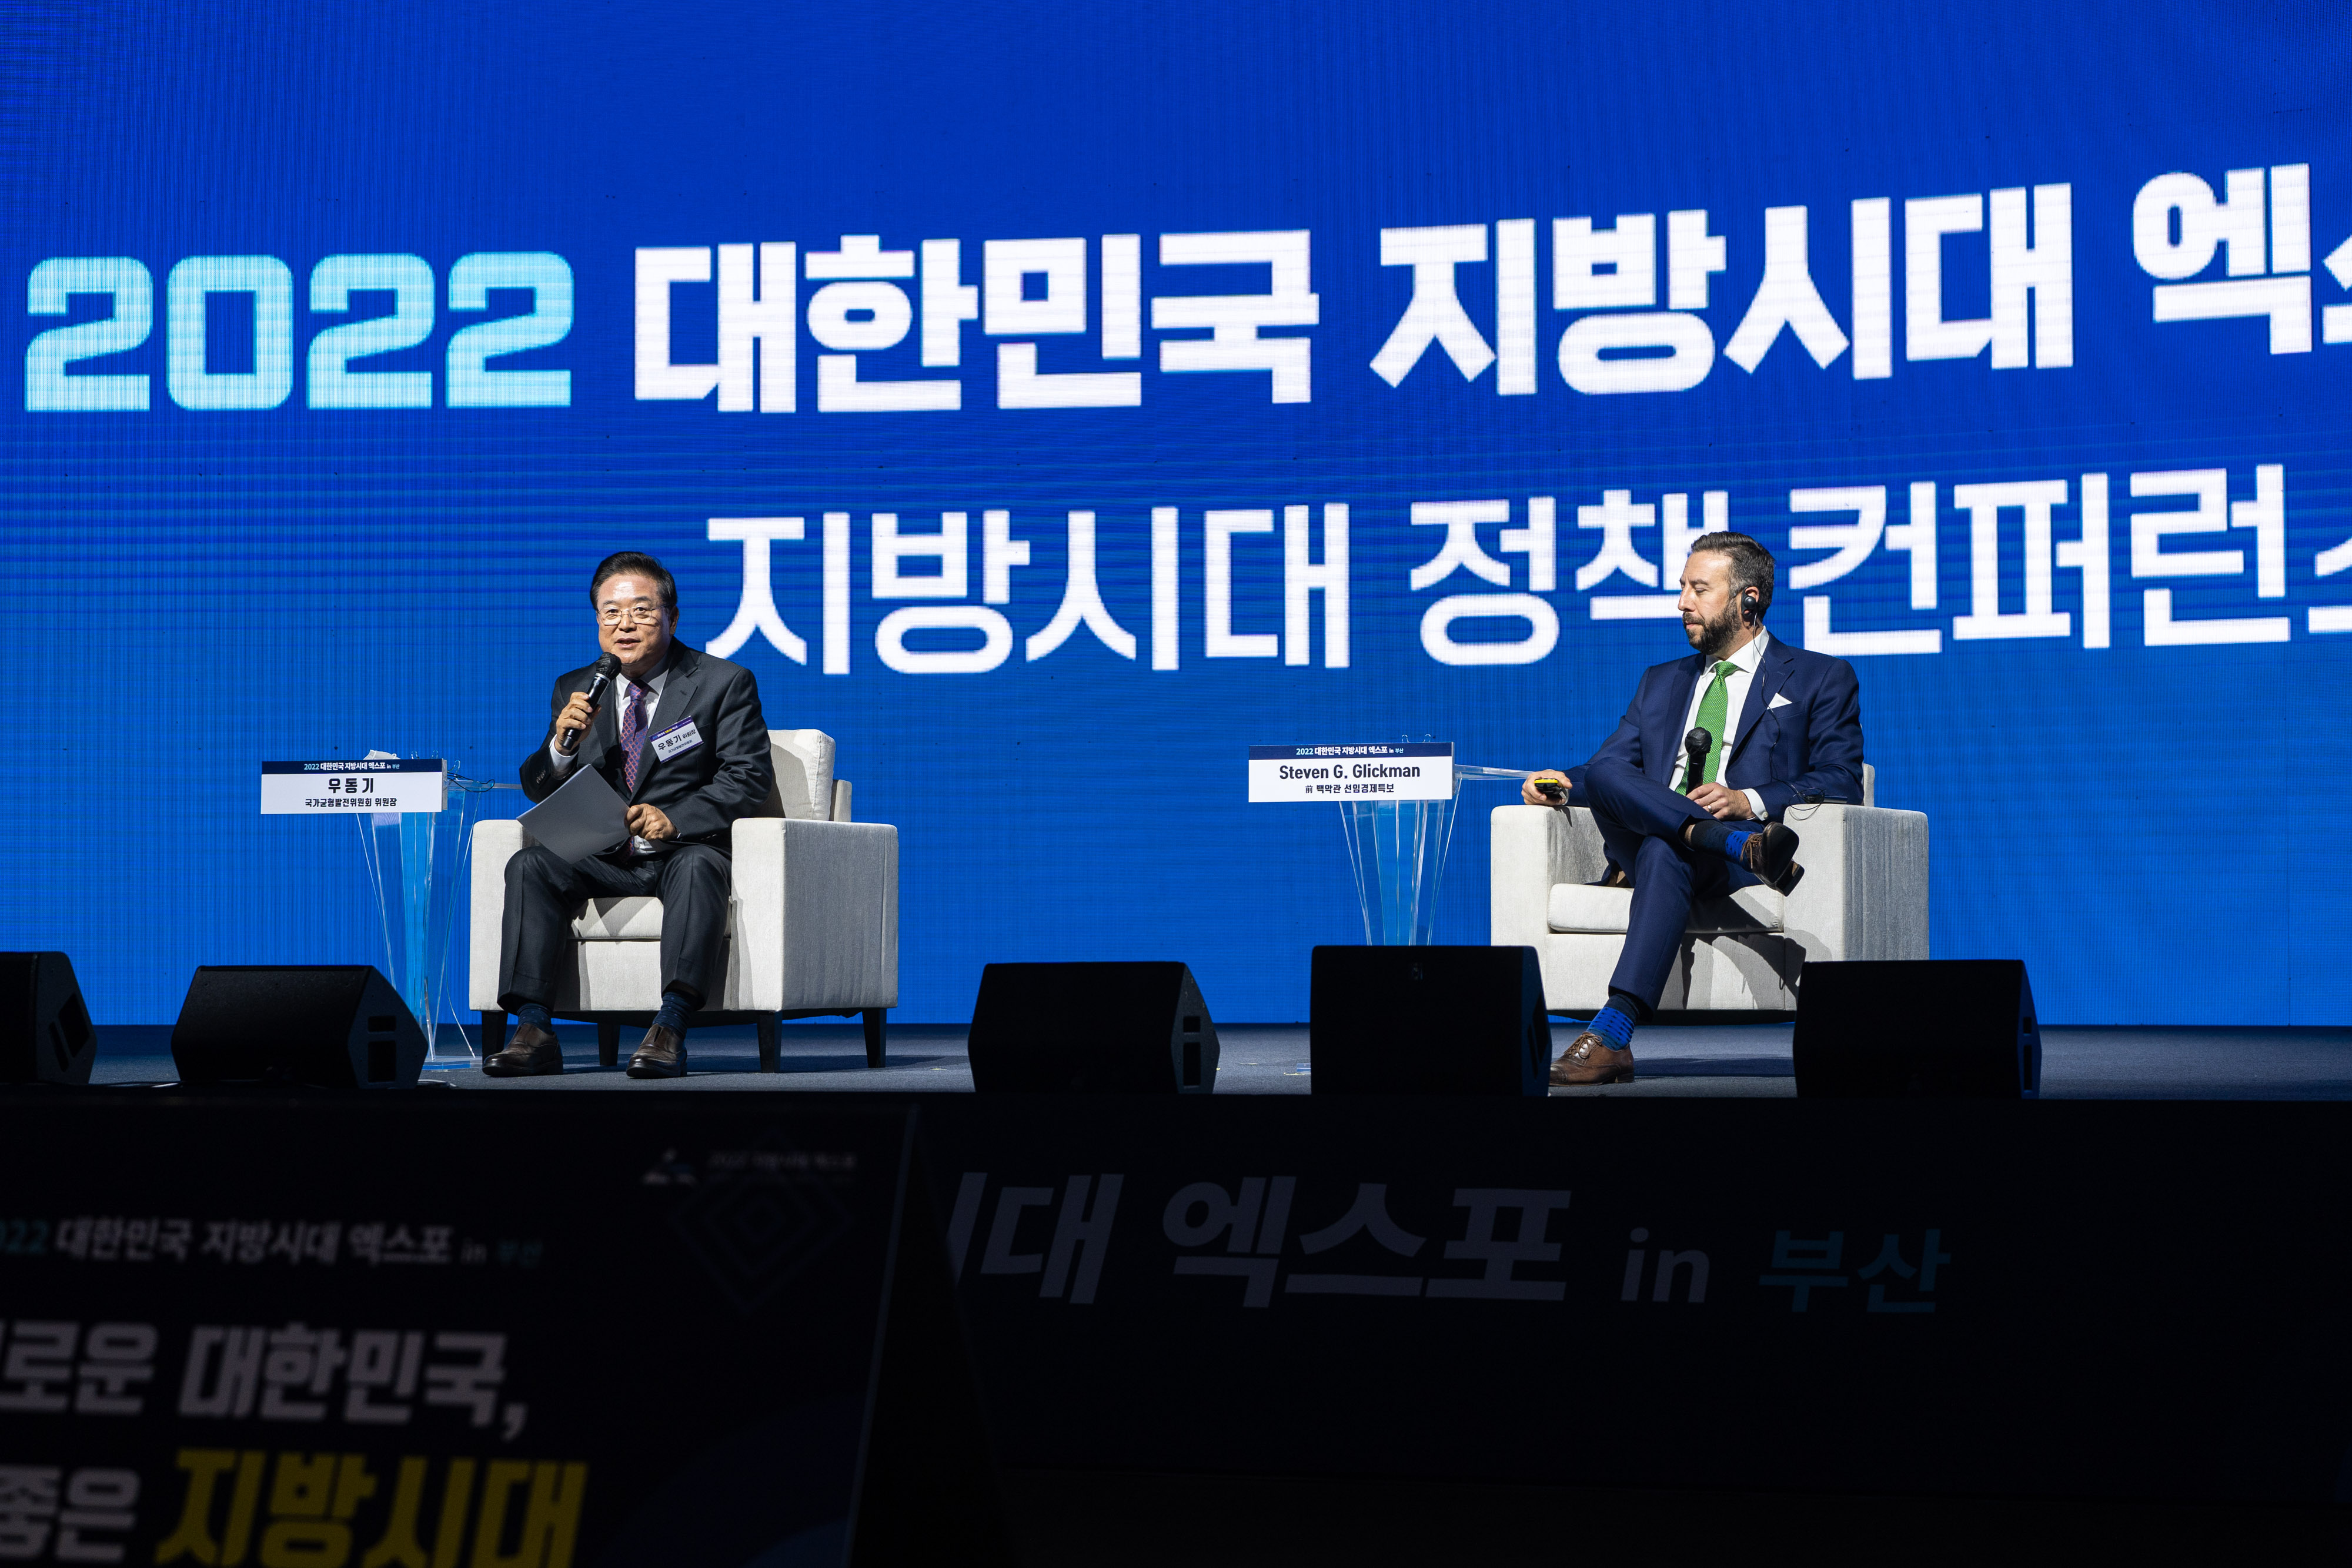 11월 10일부터 12일까지 부산 벡스코에서 「2022 대한민국 지방시대 엑스포」를 개최하였다.(3)